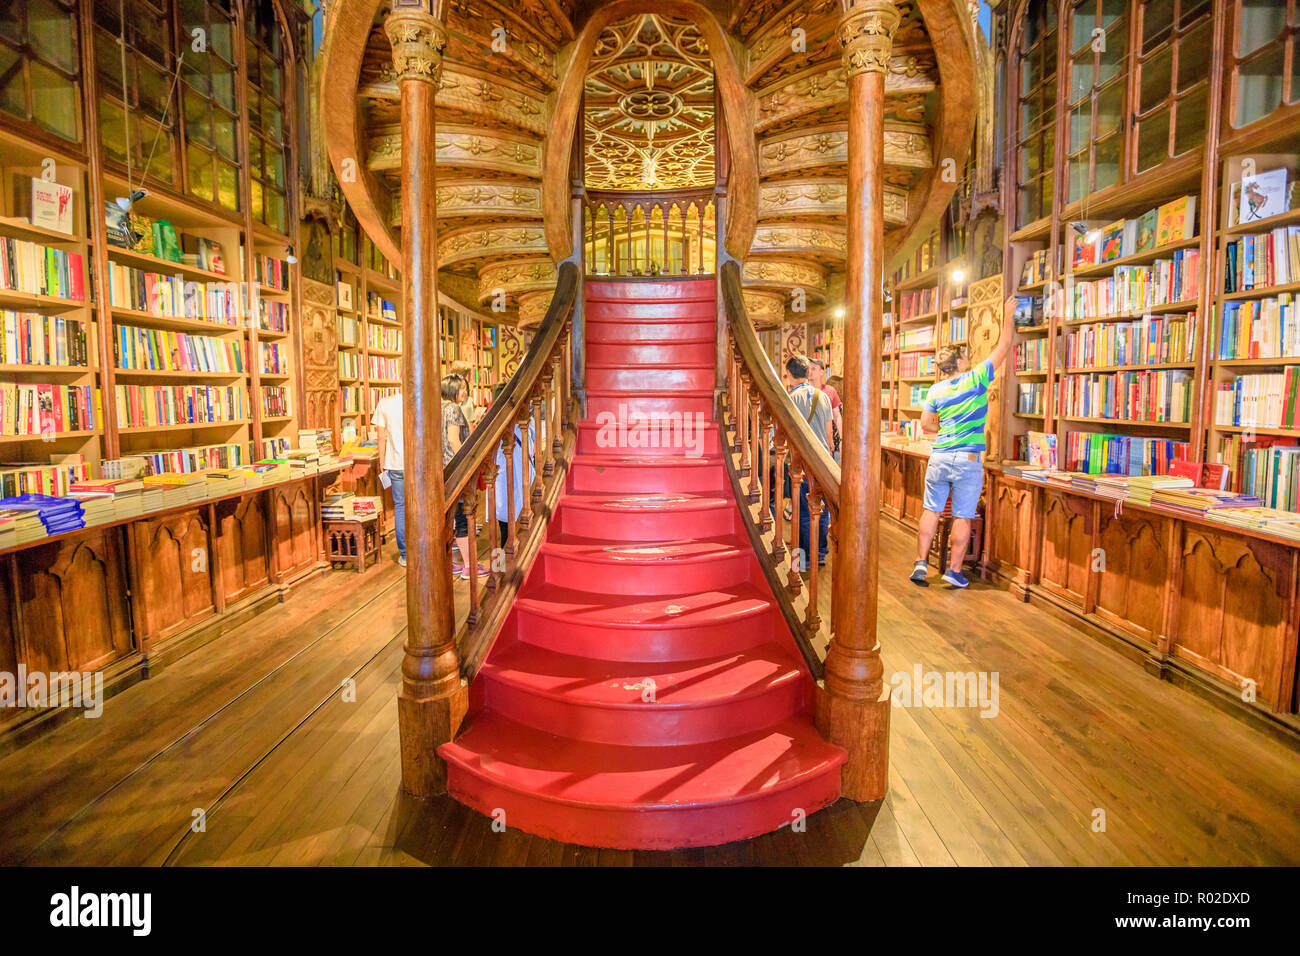 Oporto, Portogallo - Agosto 13, 2017: Grandi scale in legno con passaggi di colore rosso all'interno della Biblioteca Lello e Irmao nel centro storico di Porto, famoso per Harry Potter film. Inquadratura orizzontale. Foto Stock